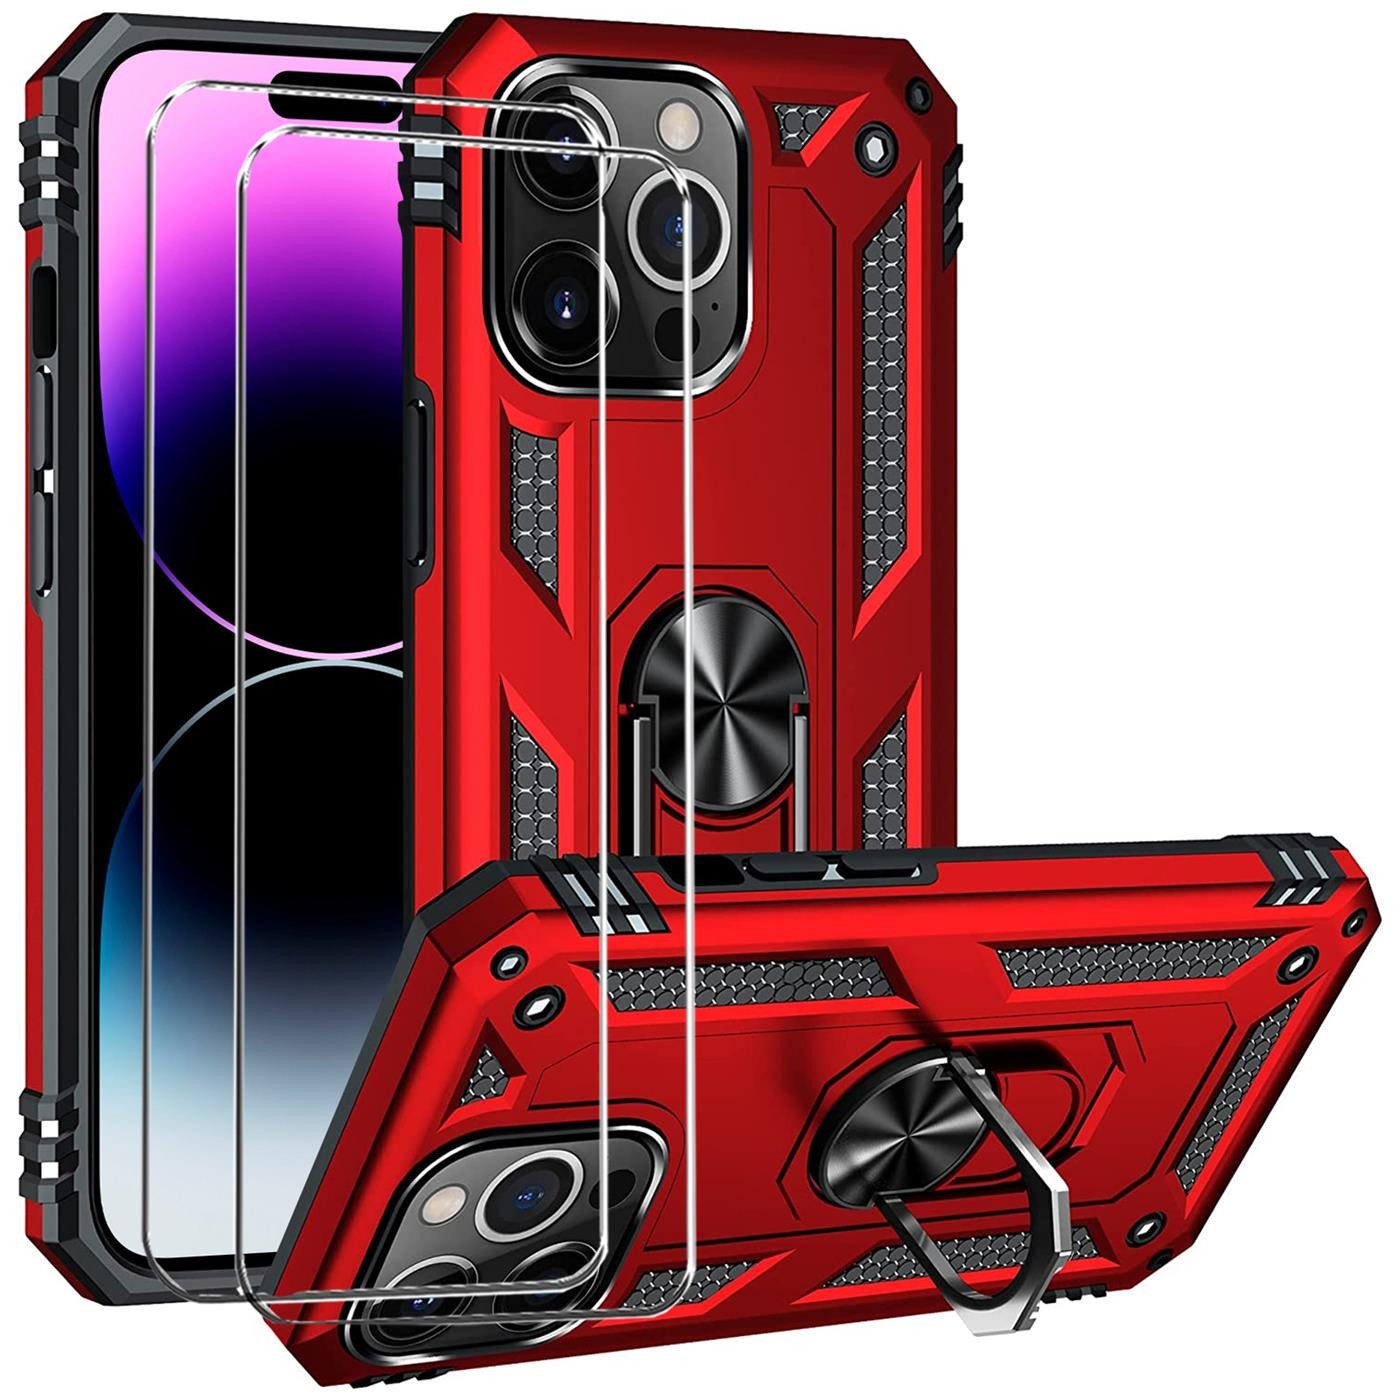 CoolGadget Handyhülle Rot als 2in1 Schutz Cover Set für das Apple iPhone 8 4,7 Zoll, 2x 9H Glas Display Schutz Folie + 1x TPU Case Hülle für iPhone 8